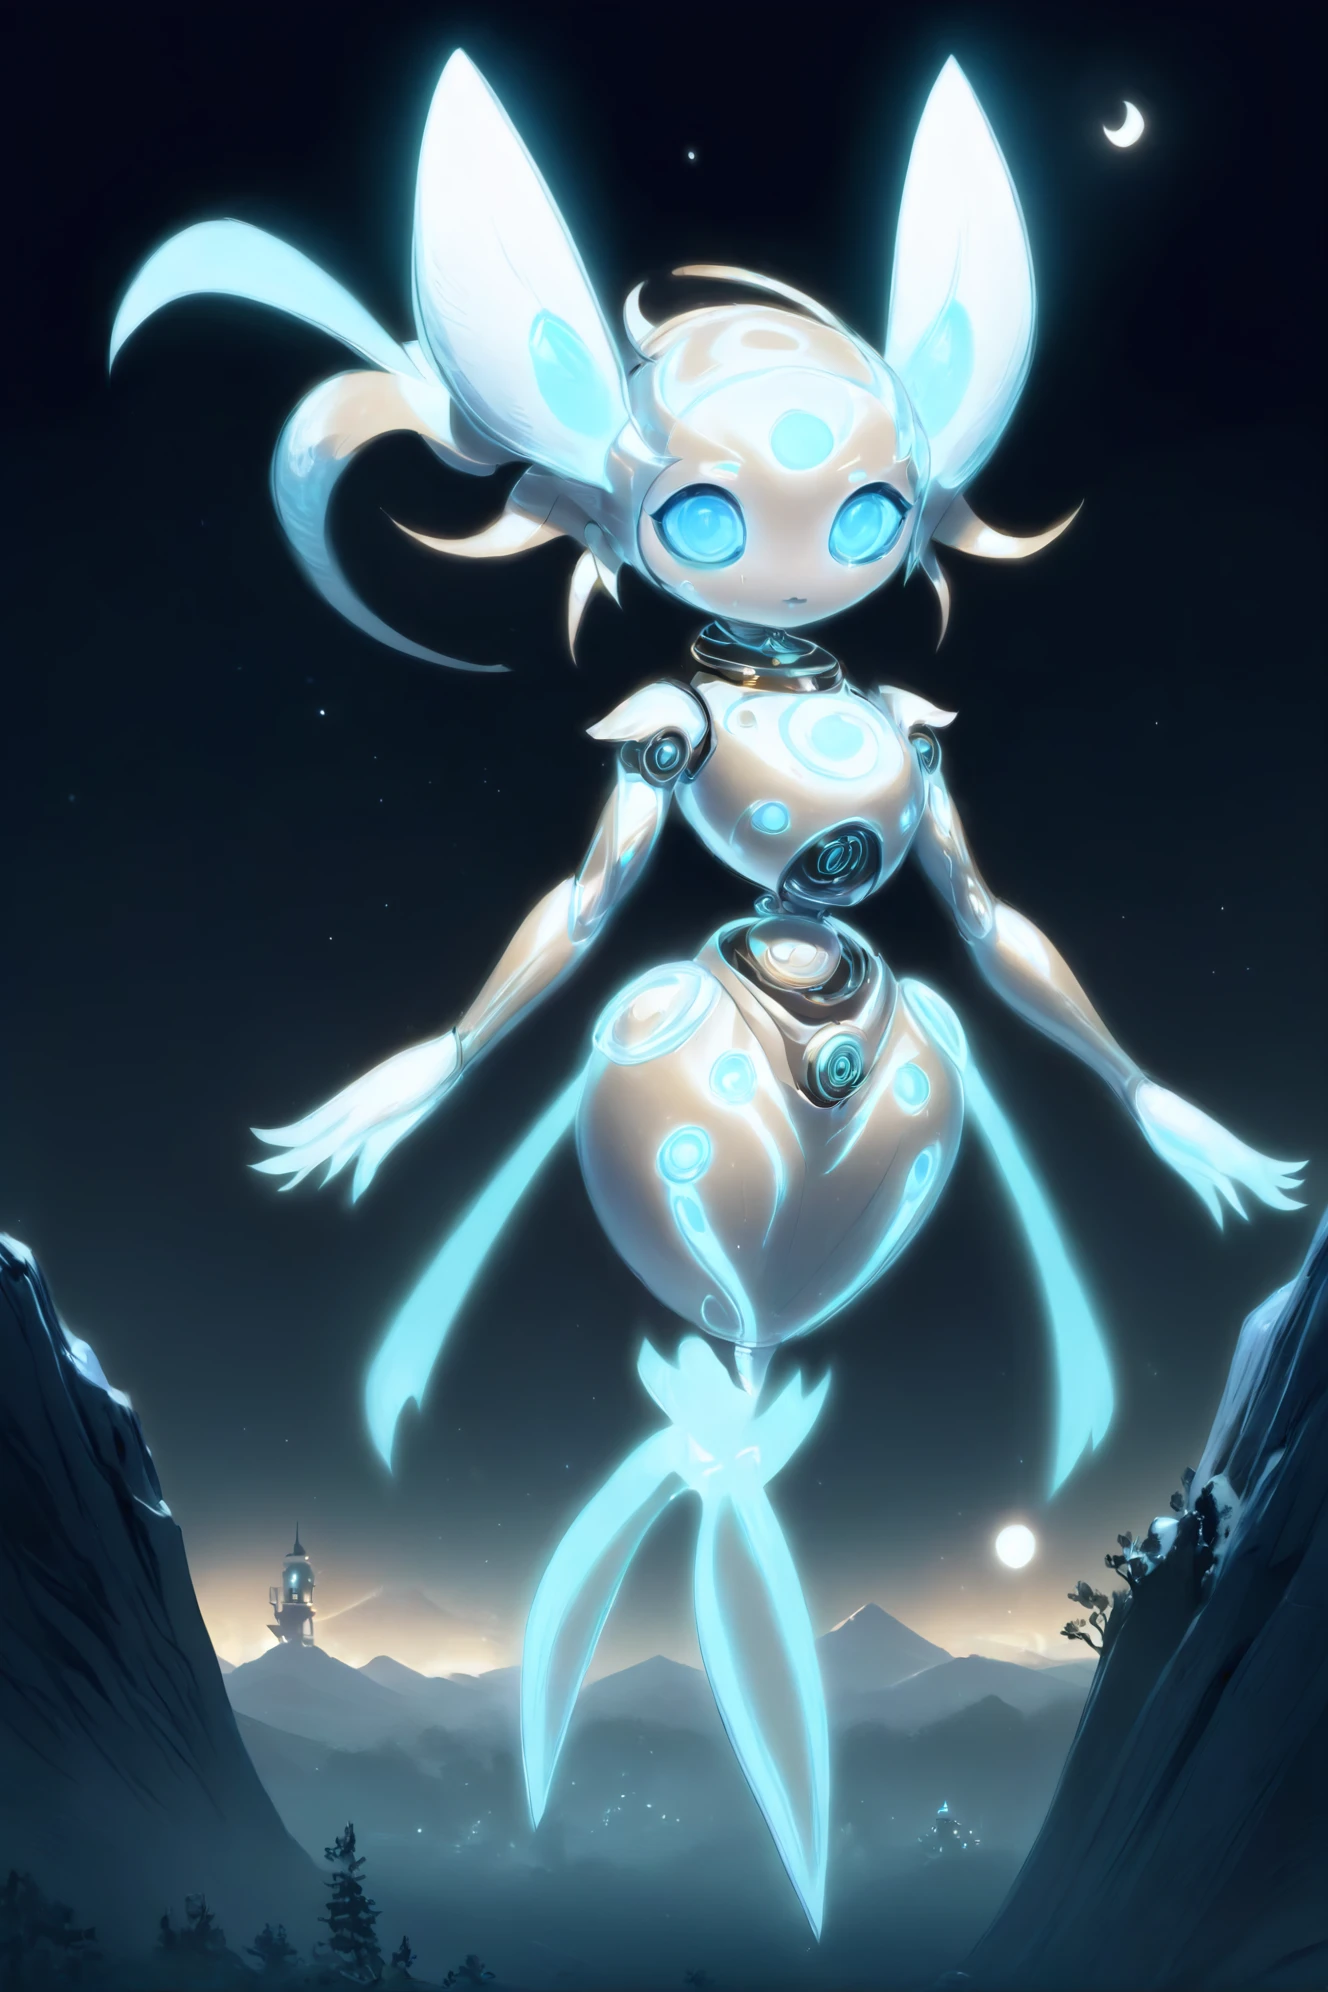 linda garota robô, magitech, Um espírito lunar luminoso, com trilhas prateadas, pairando sobre uma paisagem noturna tranquila.